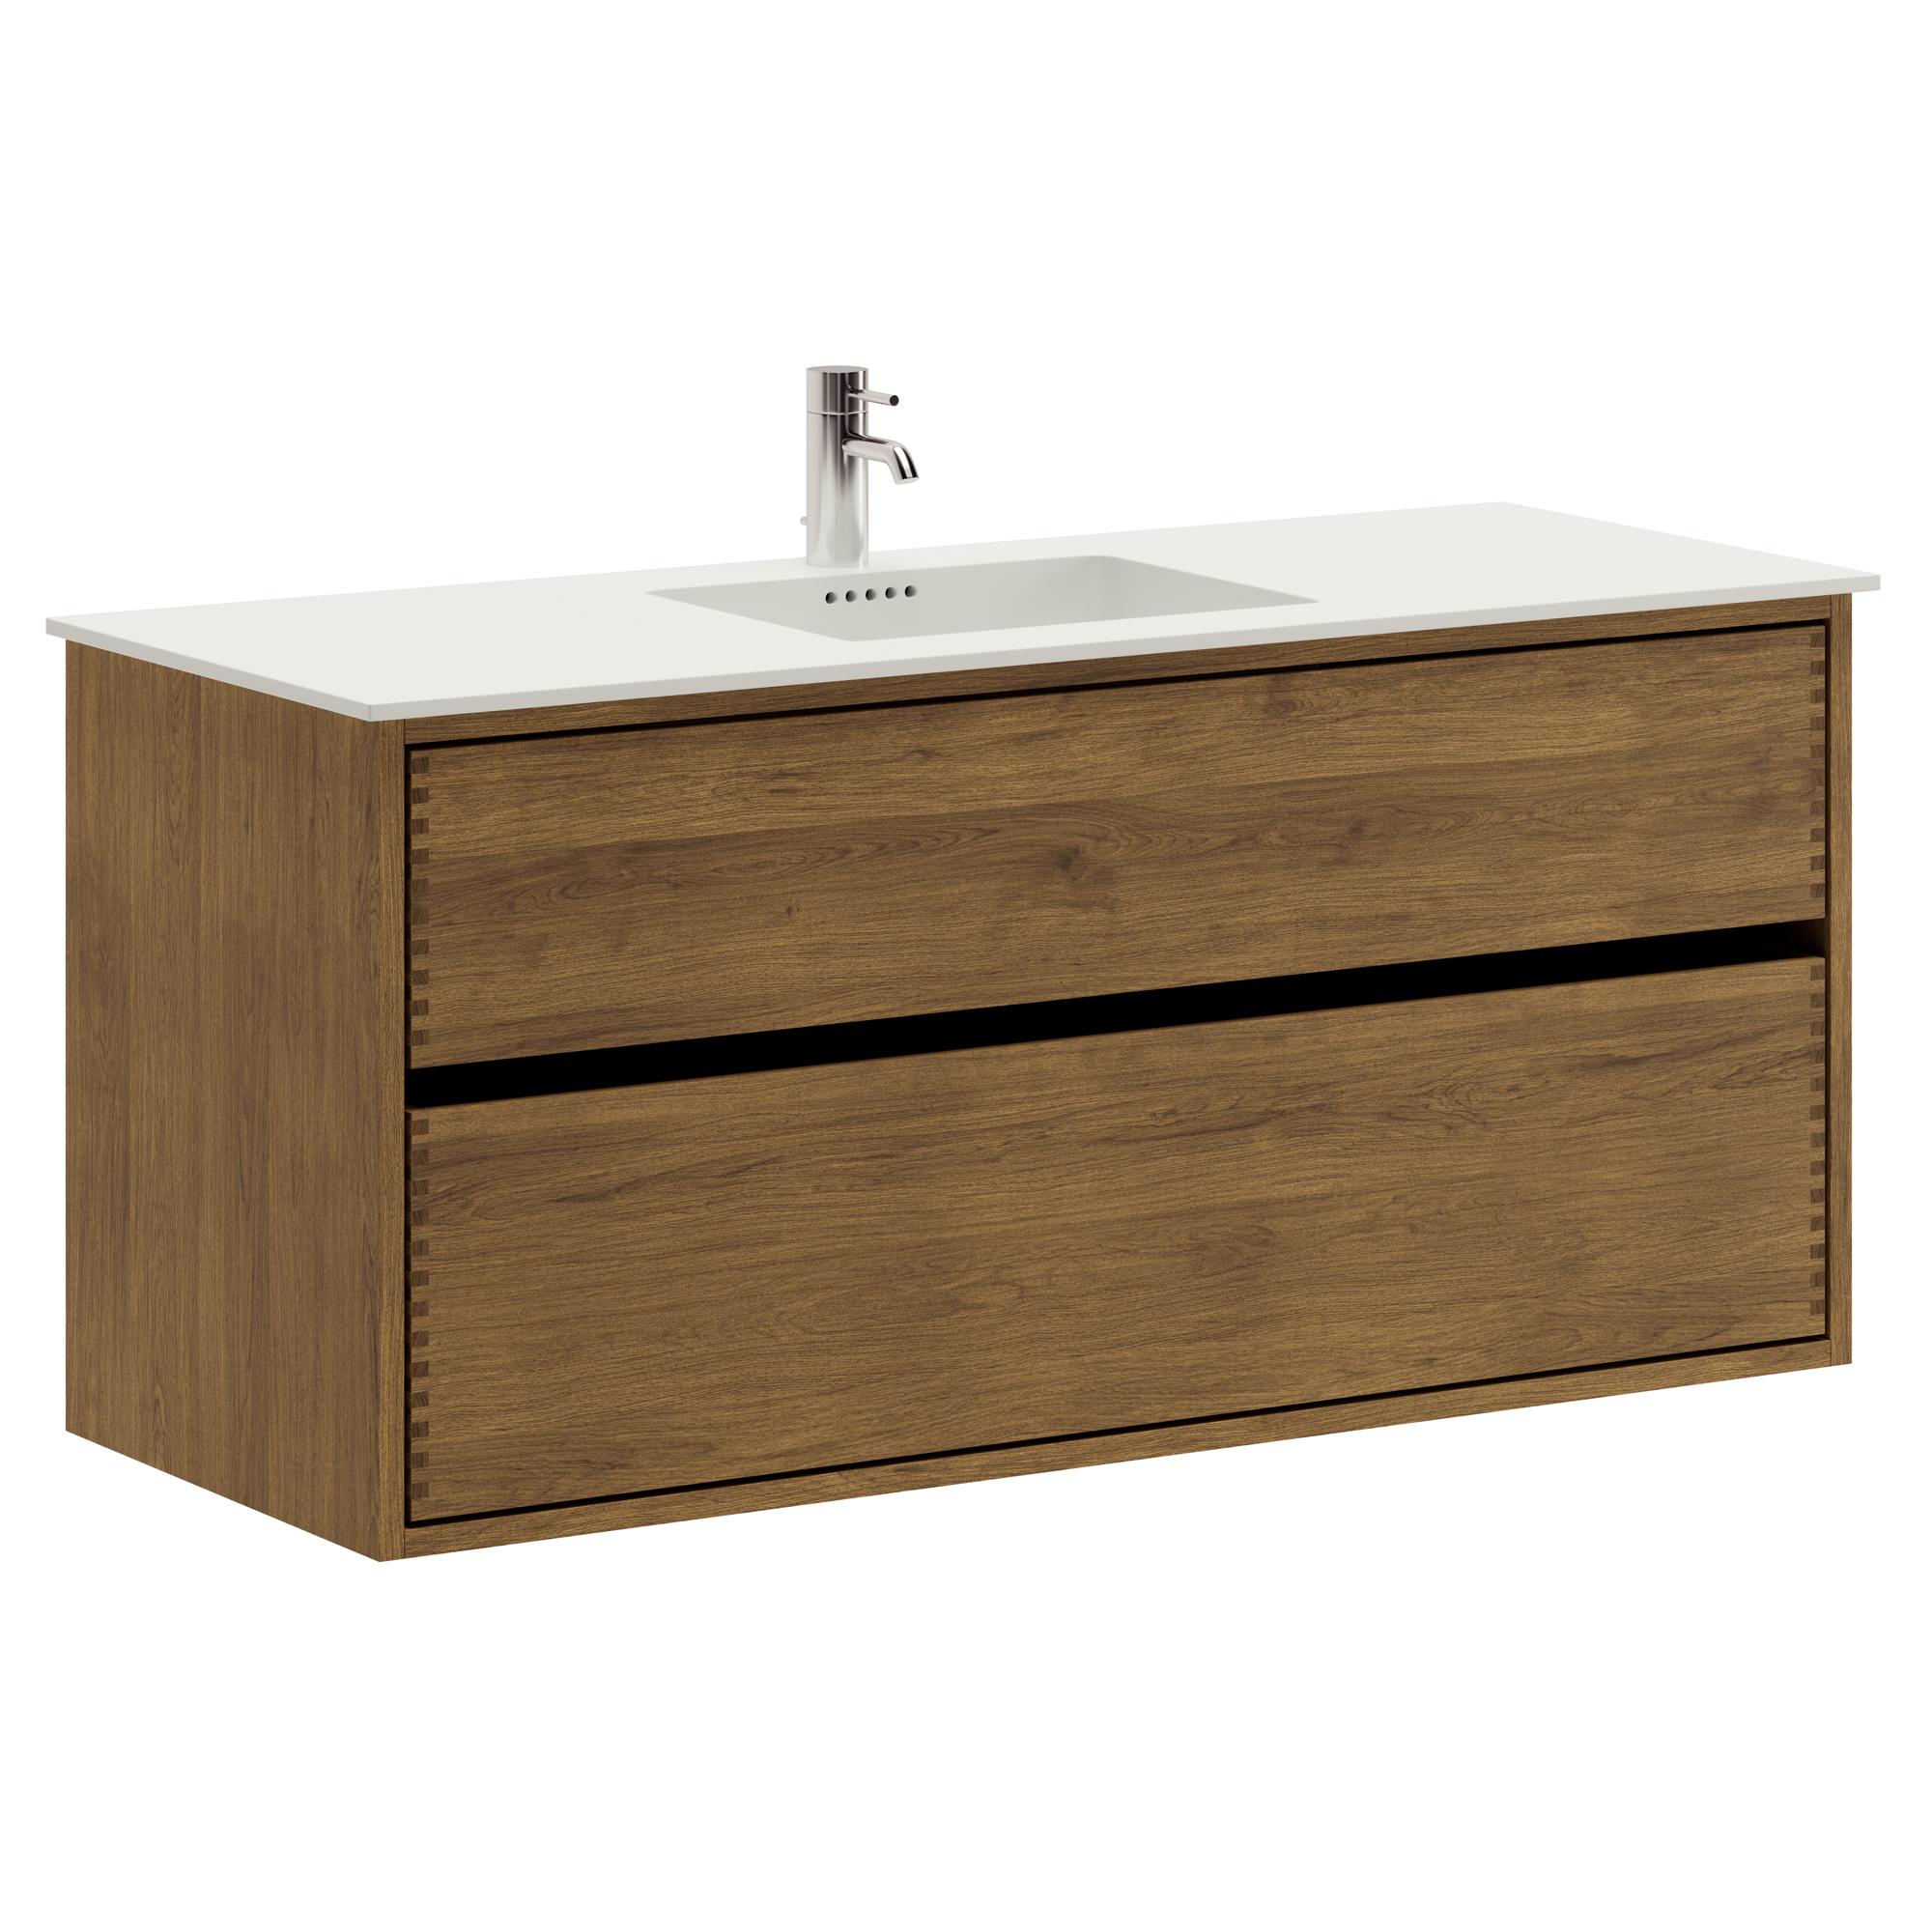 120 cm dunkel-geölter Just Wood Original-Badezimmermöbel mit 2 Schubladen und Solid Surface-Waschbecken